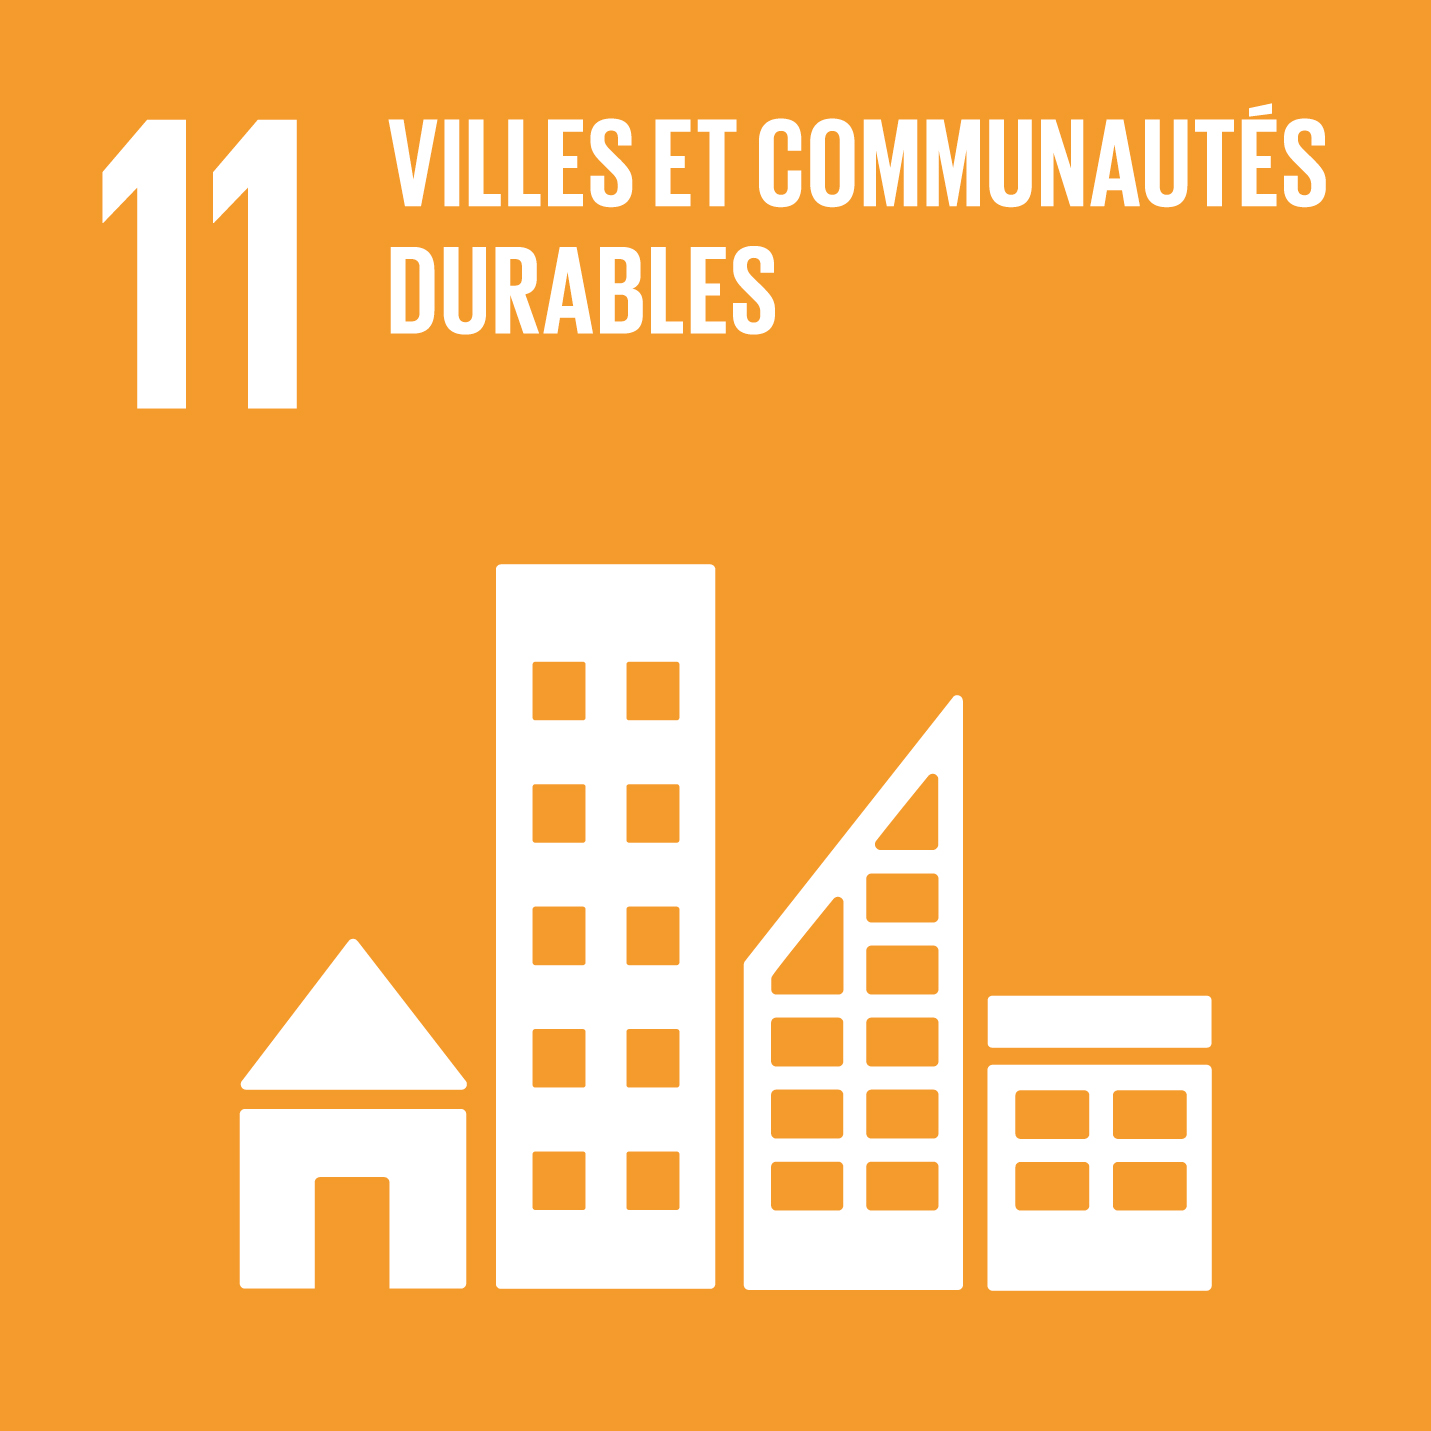 Visuel objectif de développement durable 11 Villes et communautés durables